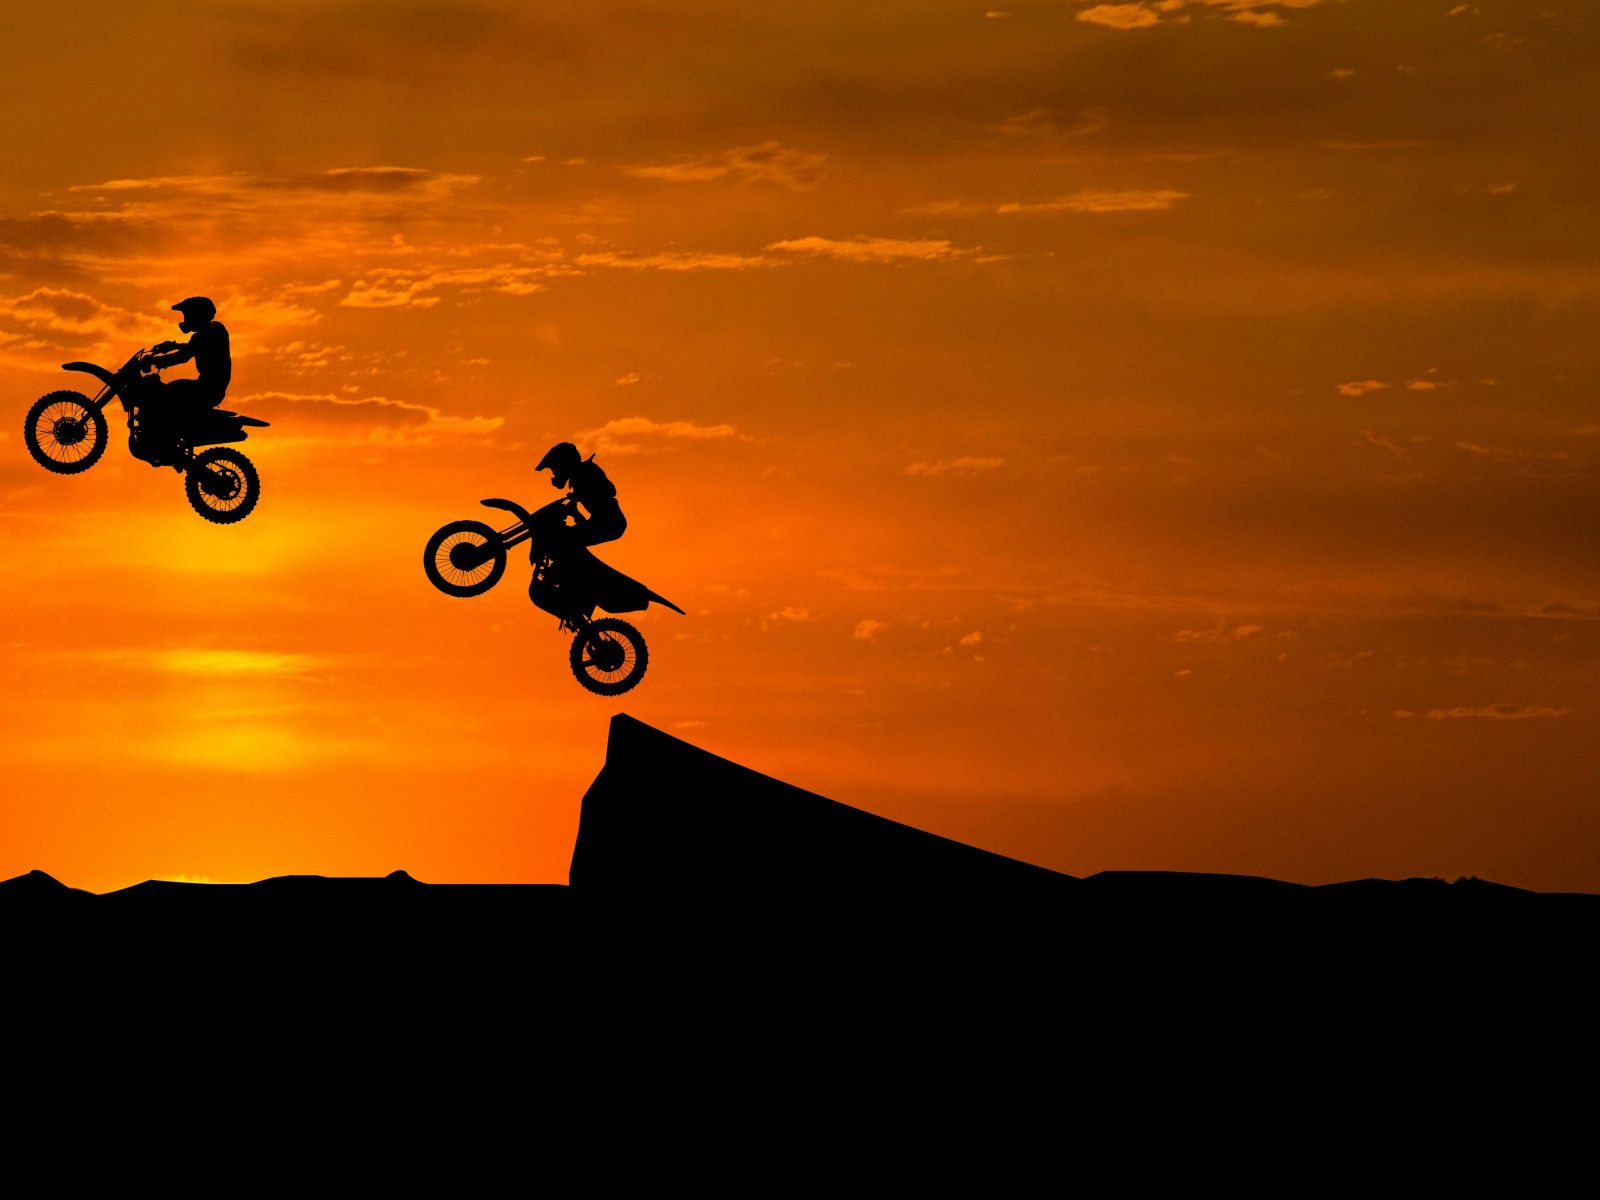 1600x1200 Cars Motos Wallpaper 8226 Dirt Bikes Wallpaper Stunts Silhouette Sunset 4k Off Roading Motocross 8226 Wallpaper For You The Best Wallpaper For Desktop Mobile